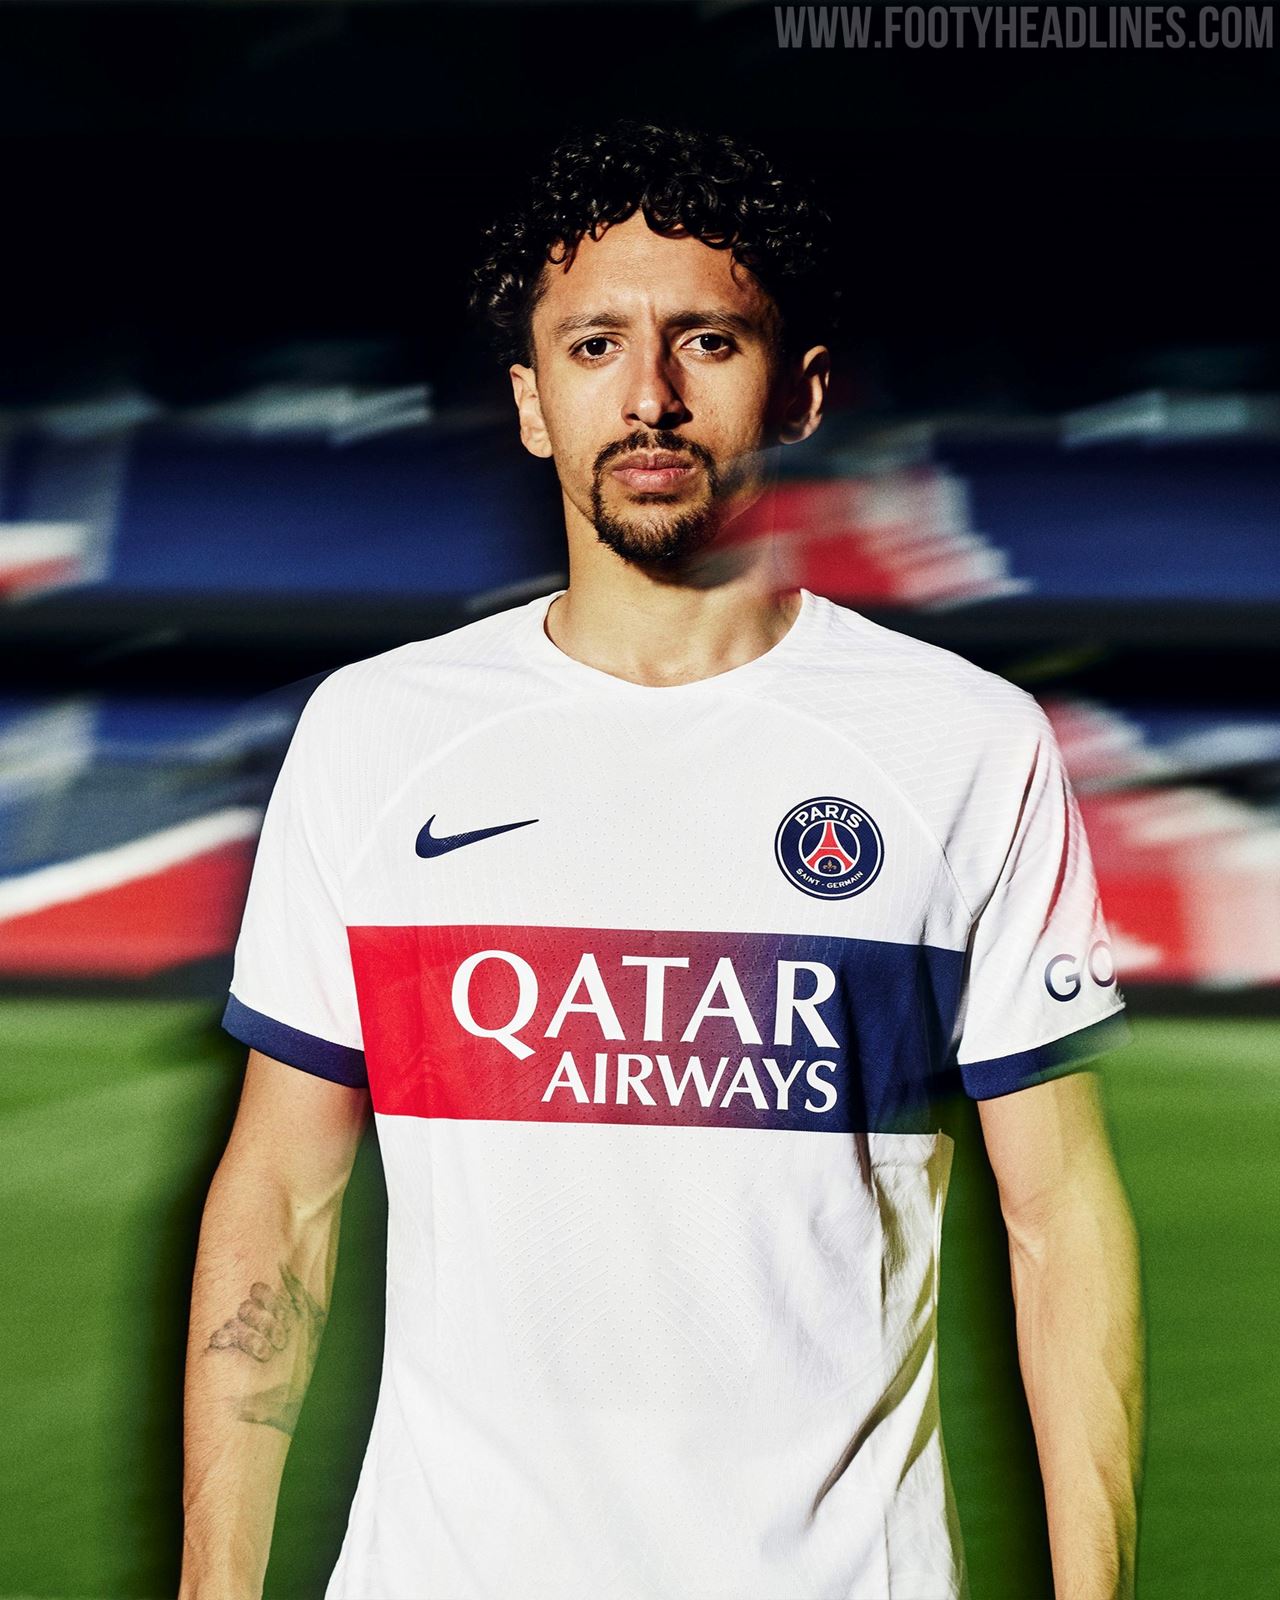 Paris Saint-Germain Kits, PSG Shirt, Home & Away Kit